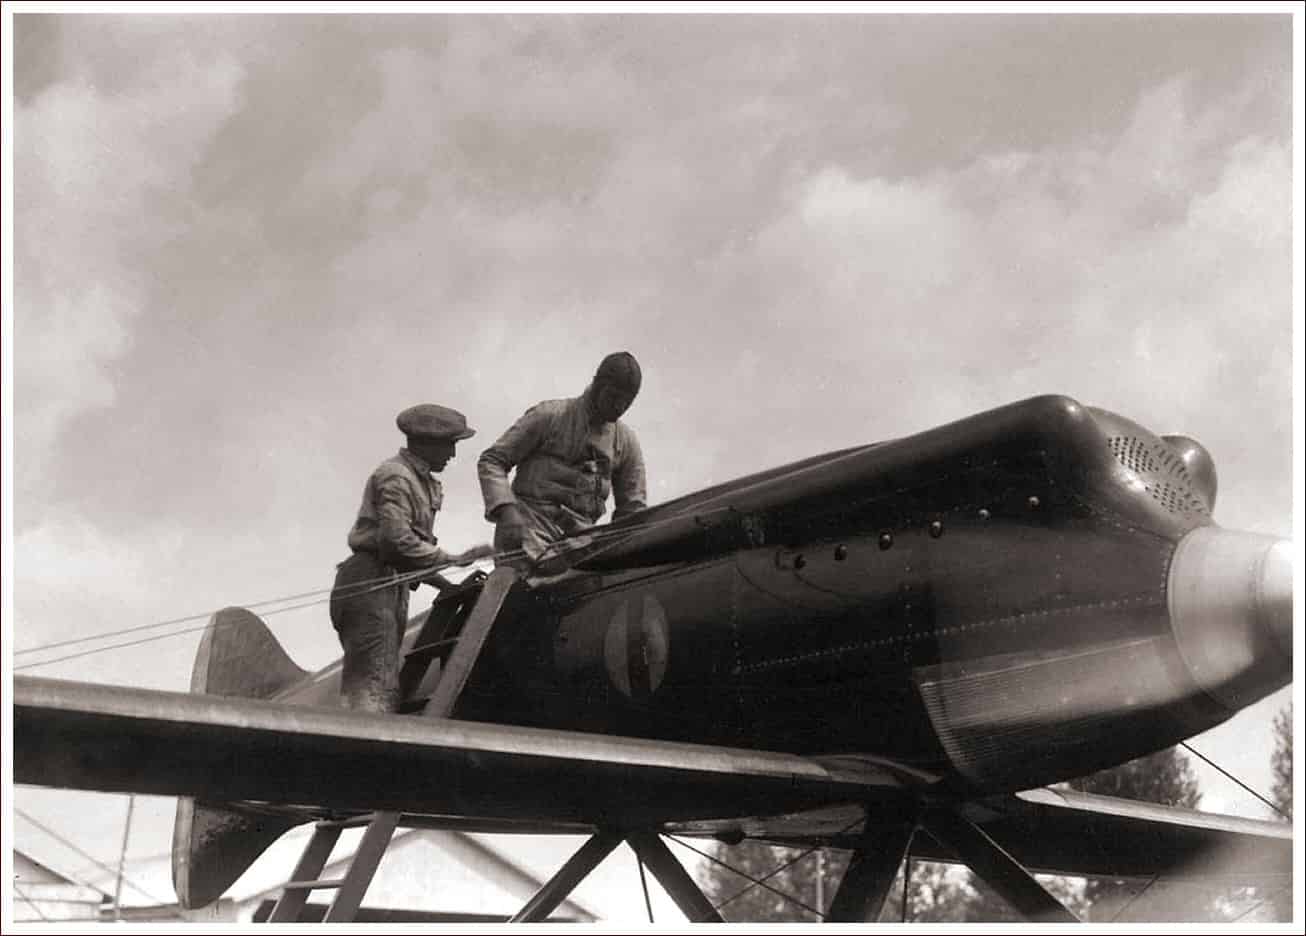 Опробование двигателя ФИАТ A.S.2 на самолете Макки М.39Под носовой частью виден ребристый поверхностный маслорадиатор